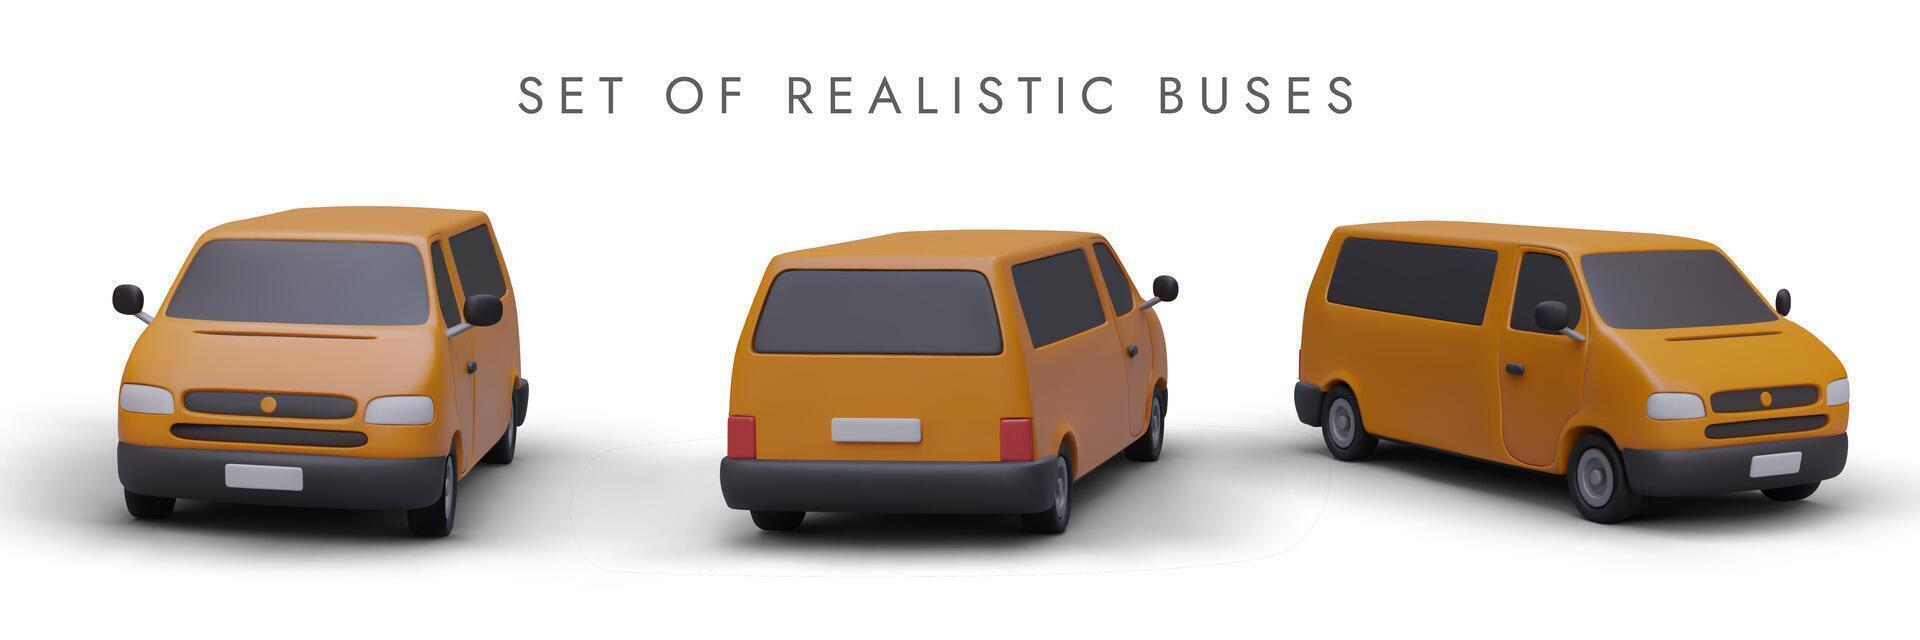 einstellen von realistisch 3d Busse im anders Positionen zum Transport branding und Werbung vektor